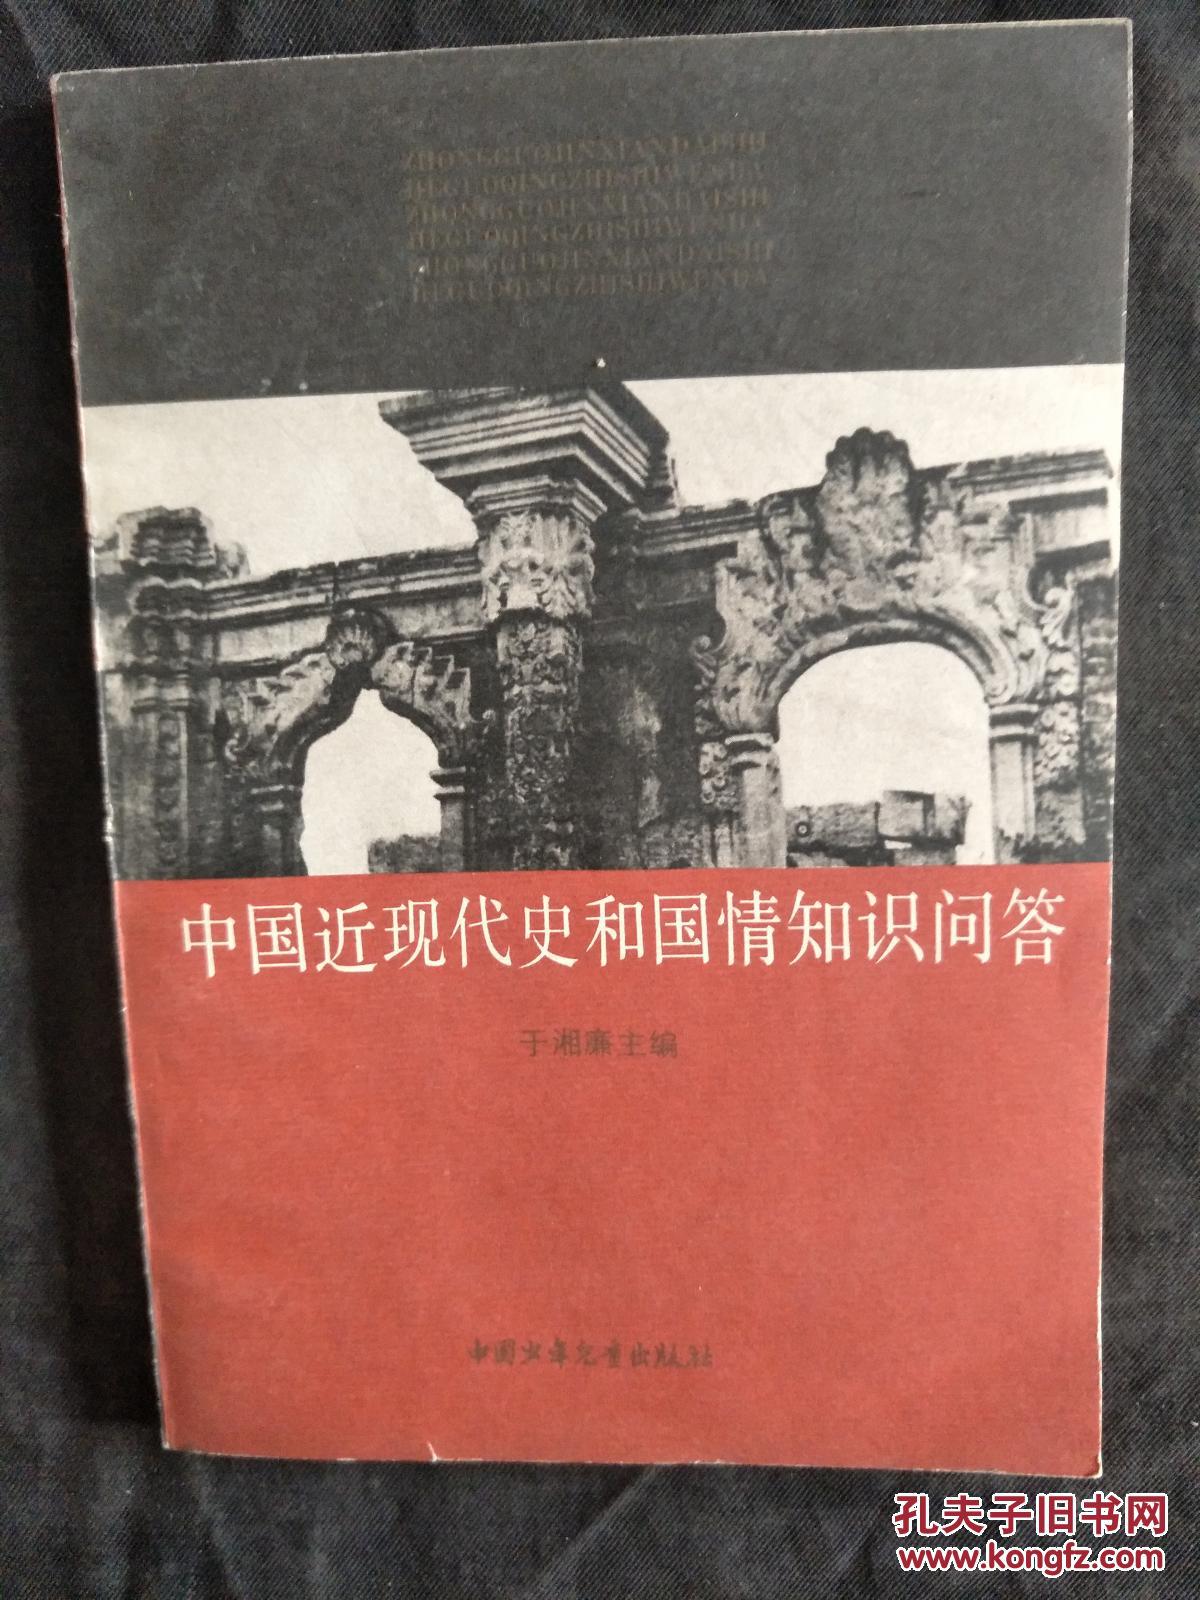 中国近代史和国情知识问答